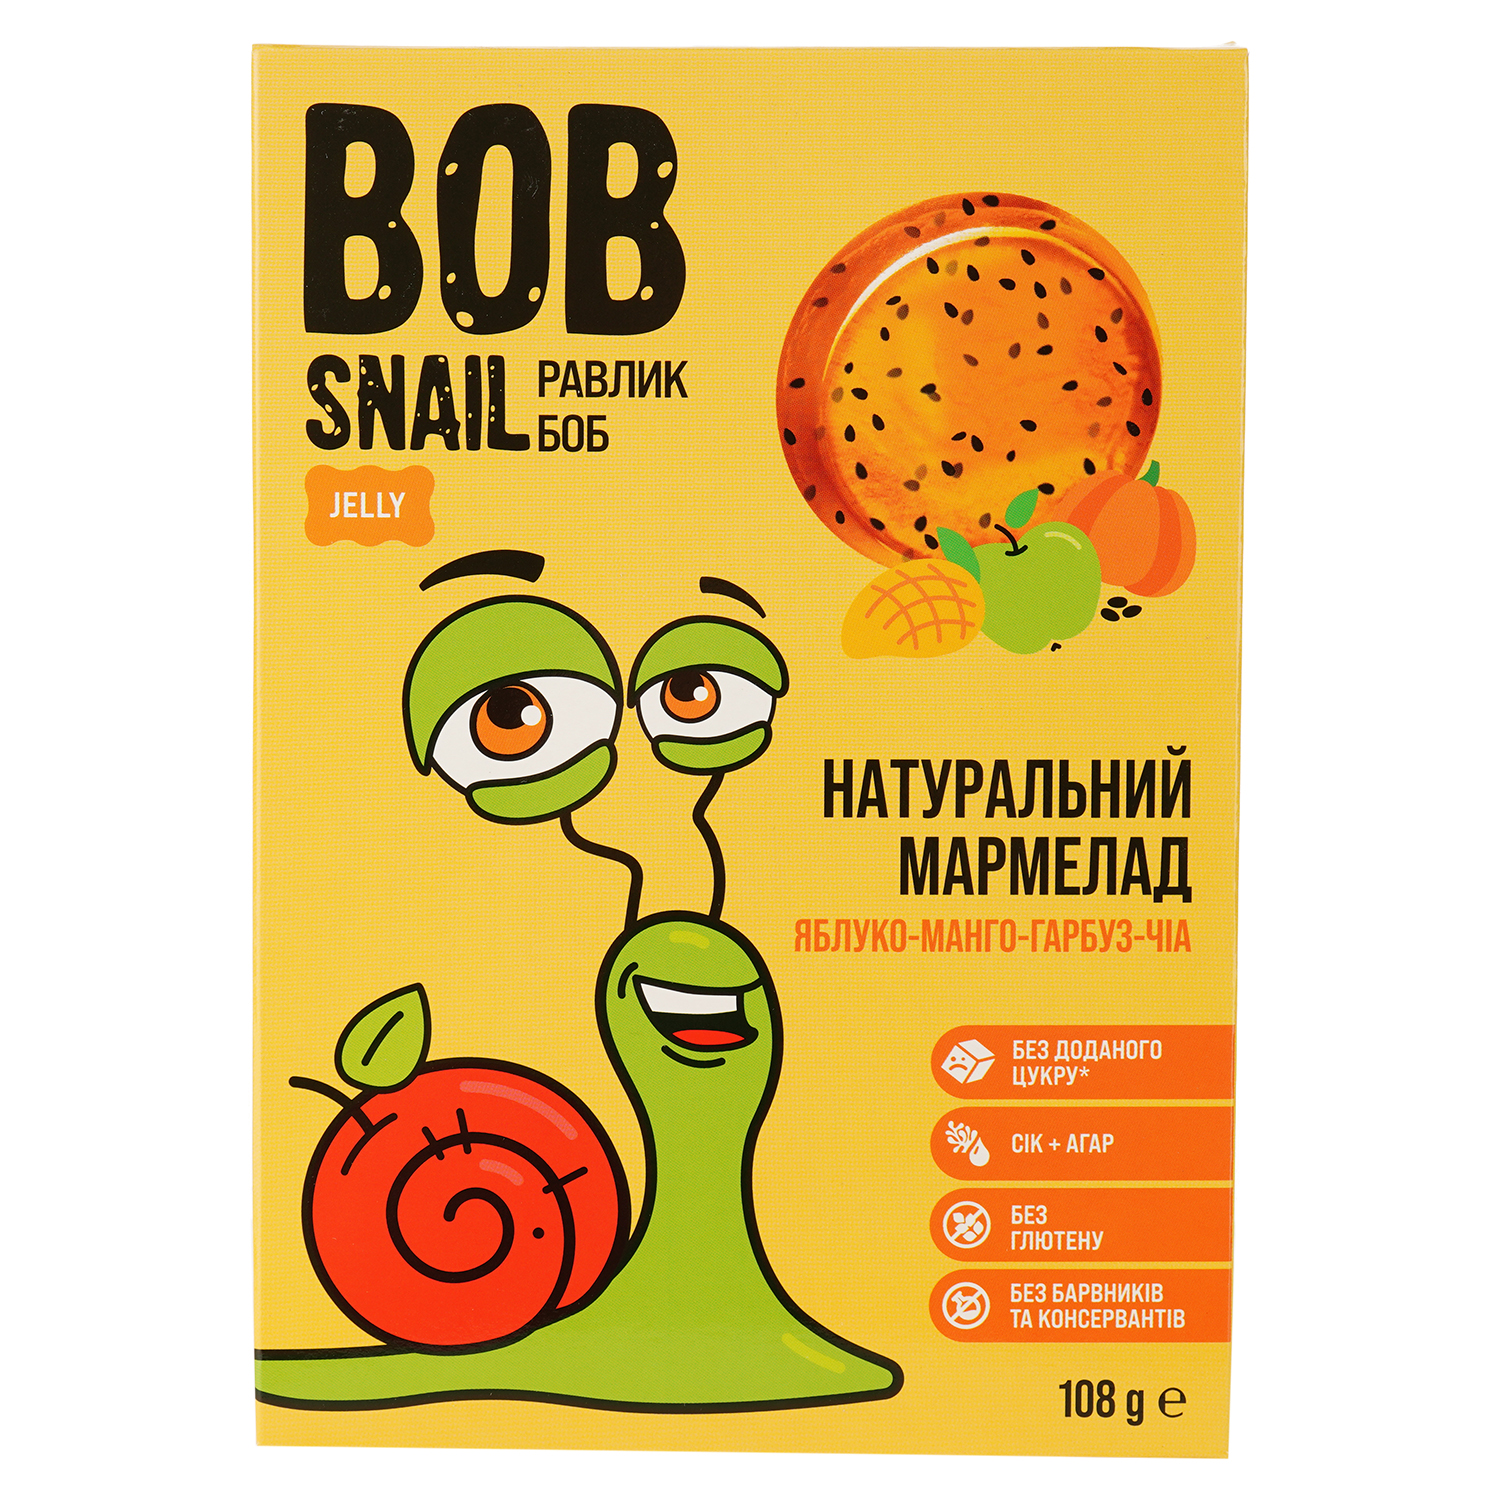 Фруктово-ягідно-овочевий мармелад Bob Snail Яблуко-Манго-Гарбуз-Чіа 108 г - фото 1